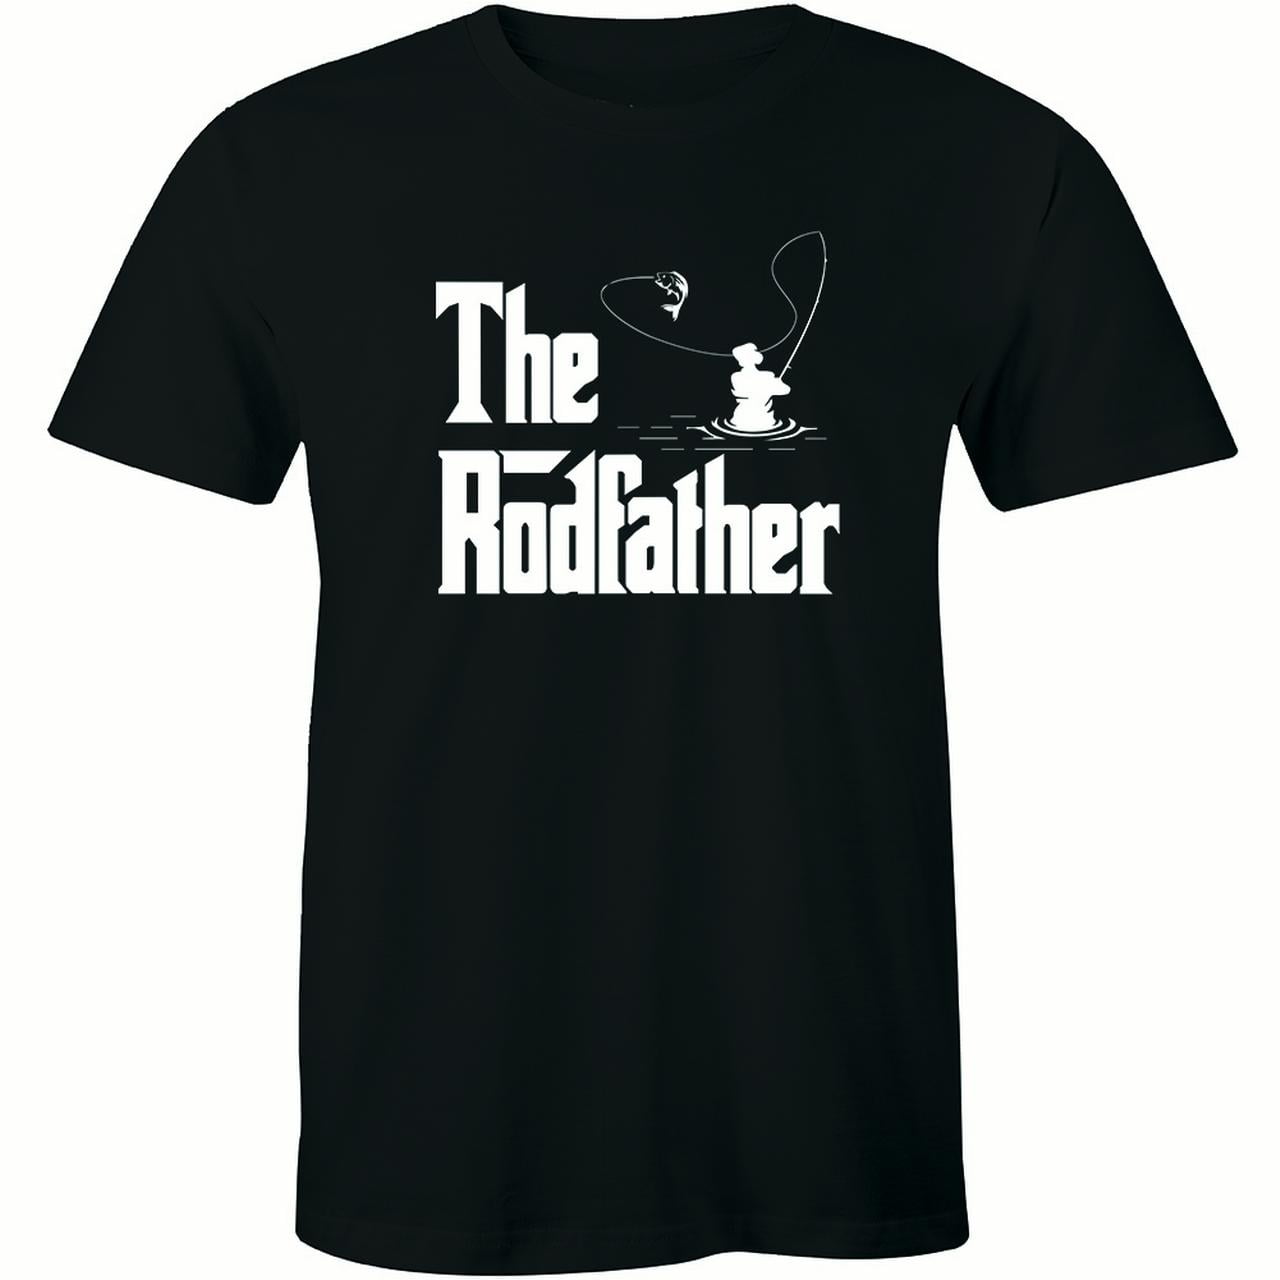 The Rodfather Shirt Funny Fishing Parody T-Shirt Papa Shirt Dad Shirt Fishing Rod Shirt Funky Cool Gift Fishing Shirt